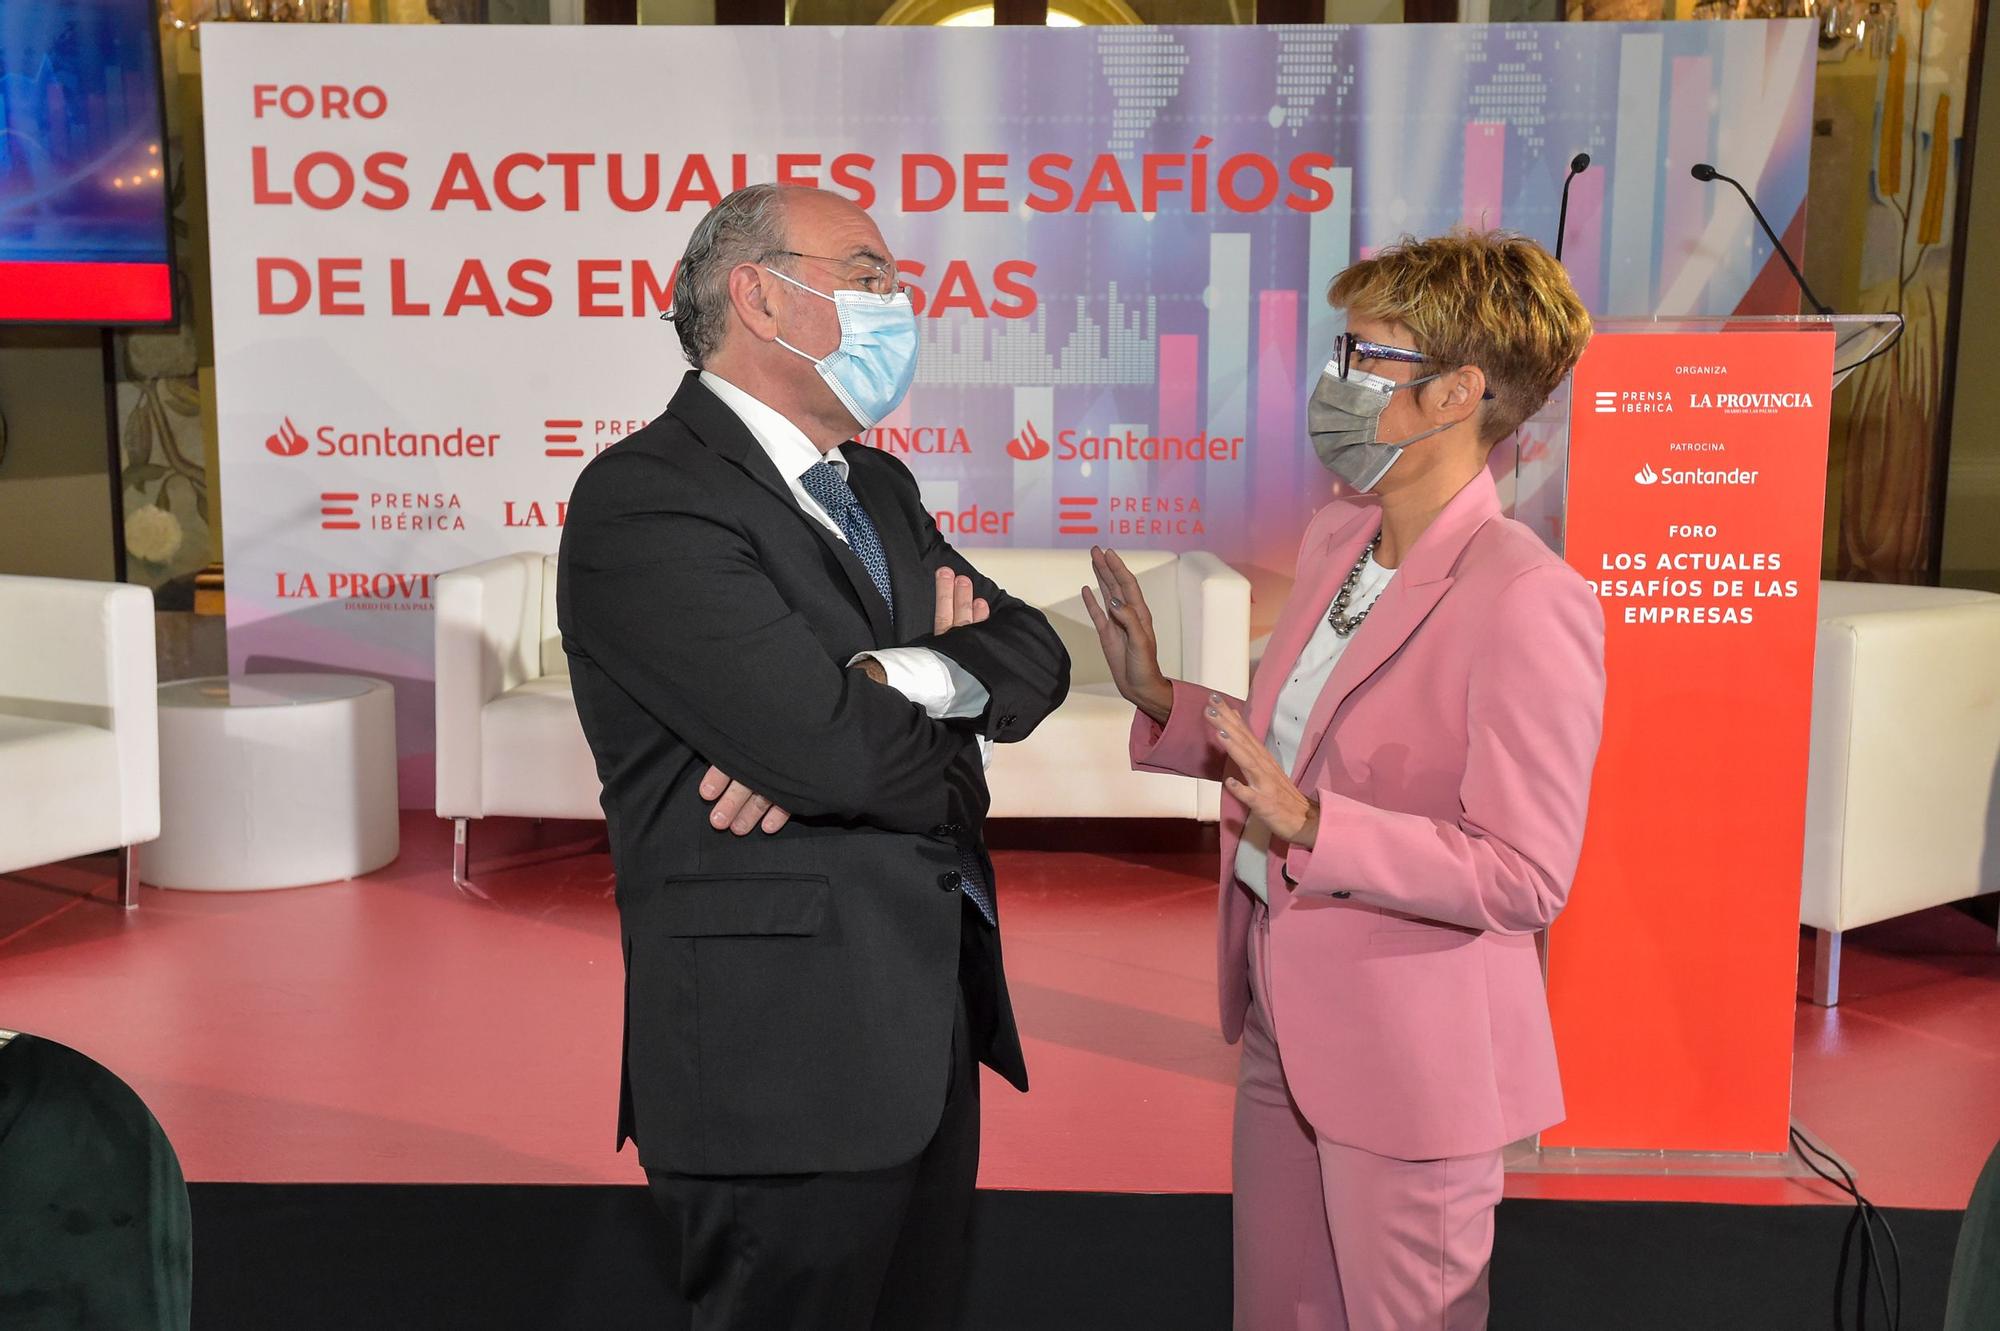 Foro Santander El desafío de las empresas